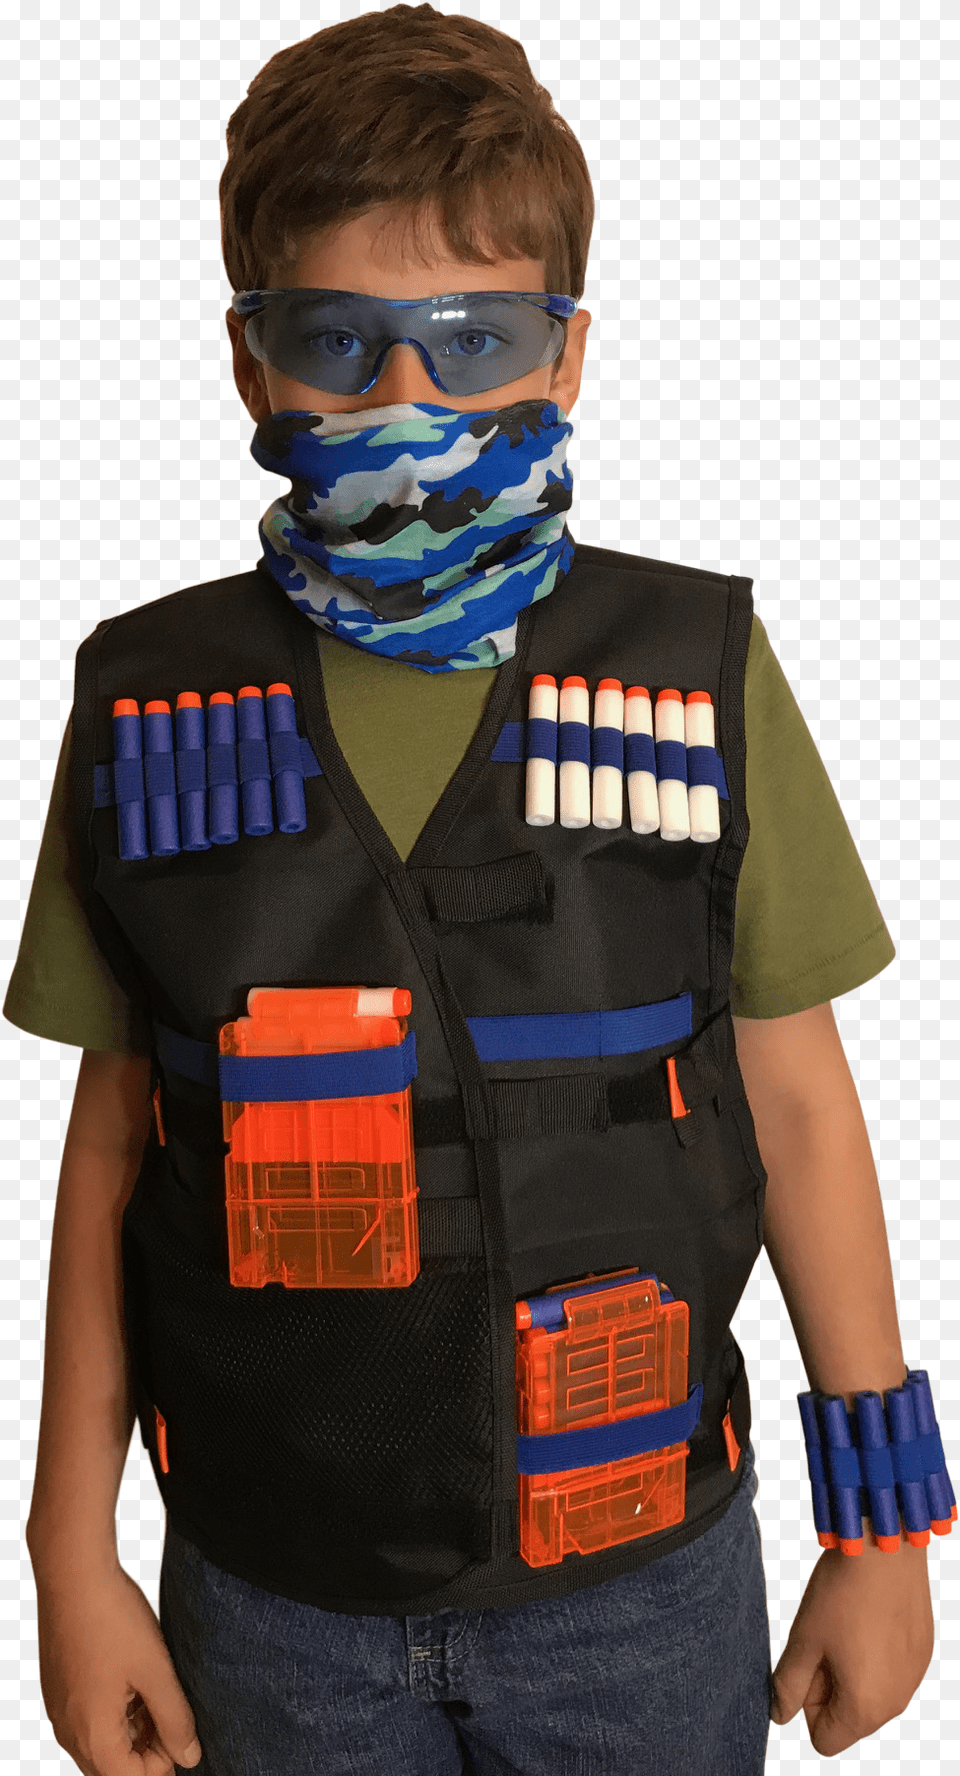 Tactical Vest Kit For Nerf Guns N Strike Elite Series Nerf Vest Tactical, Clothing, Lifejacket, Boy, Child Free Transparent Png